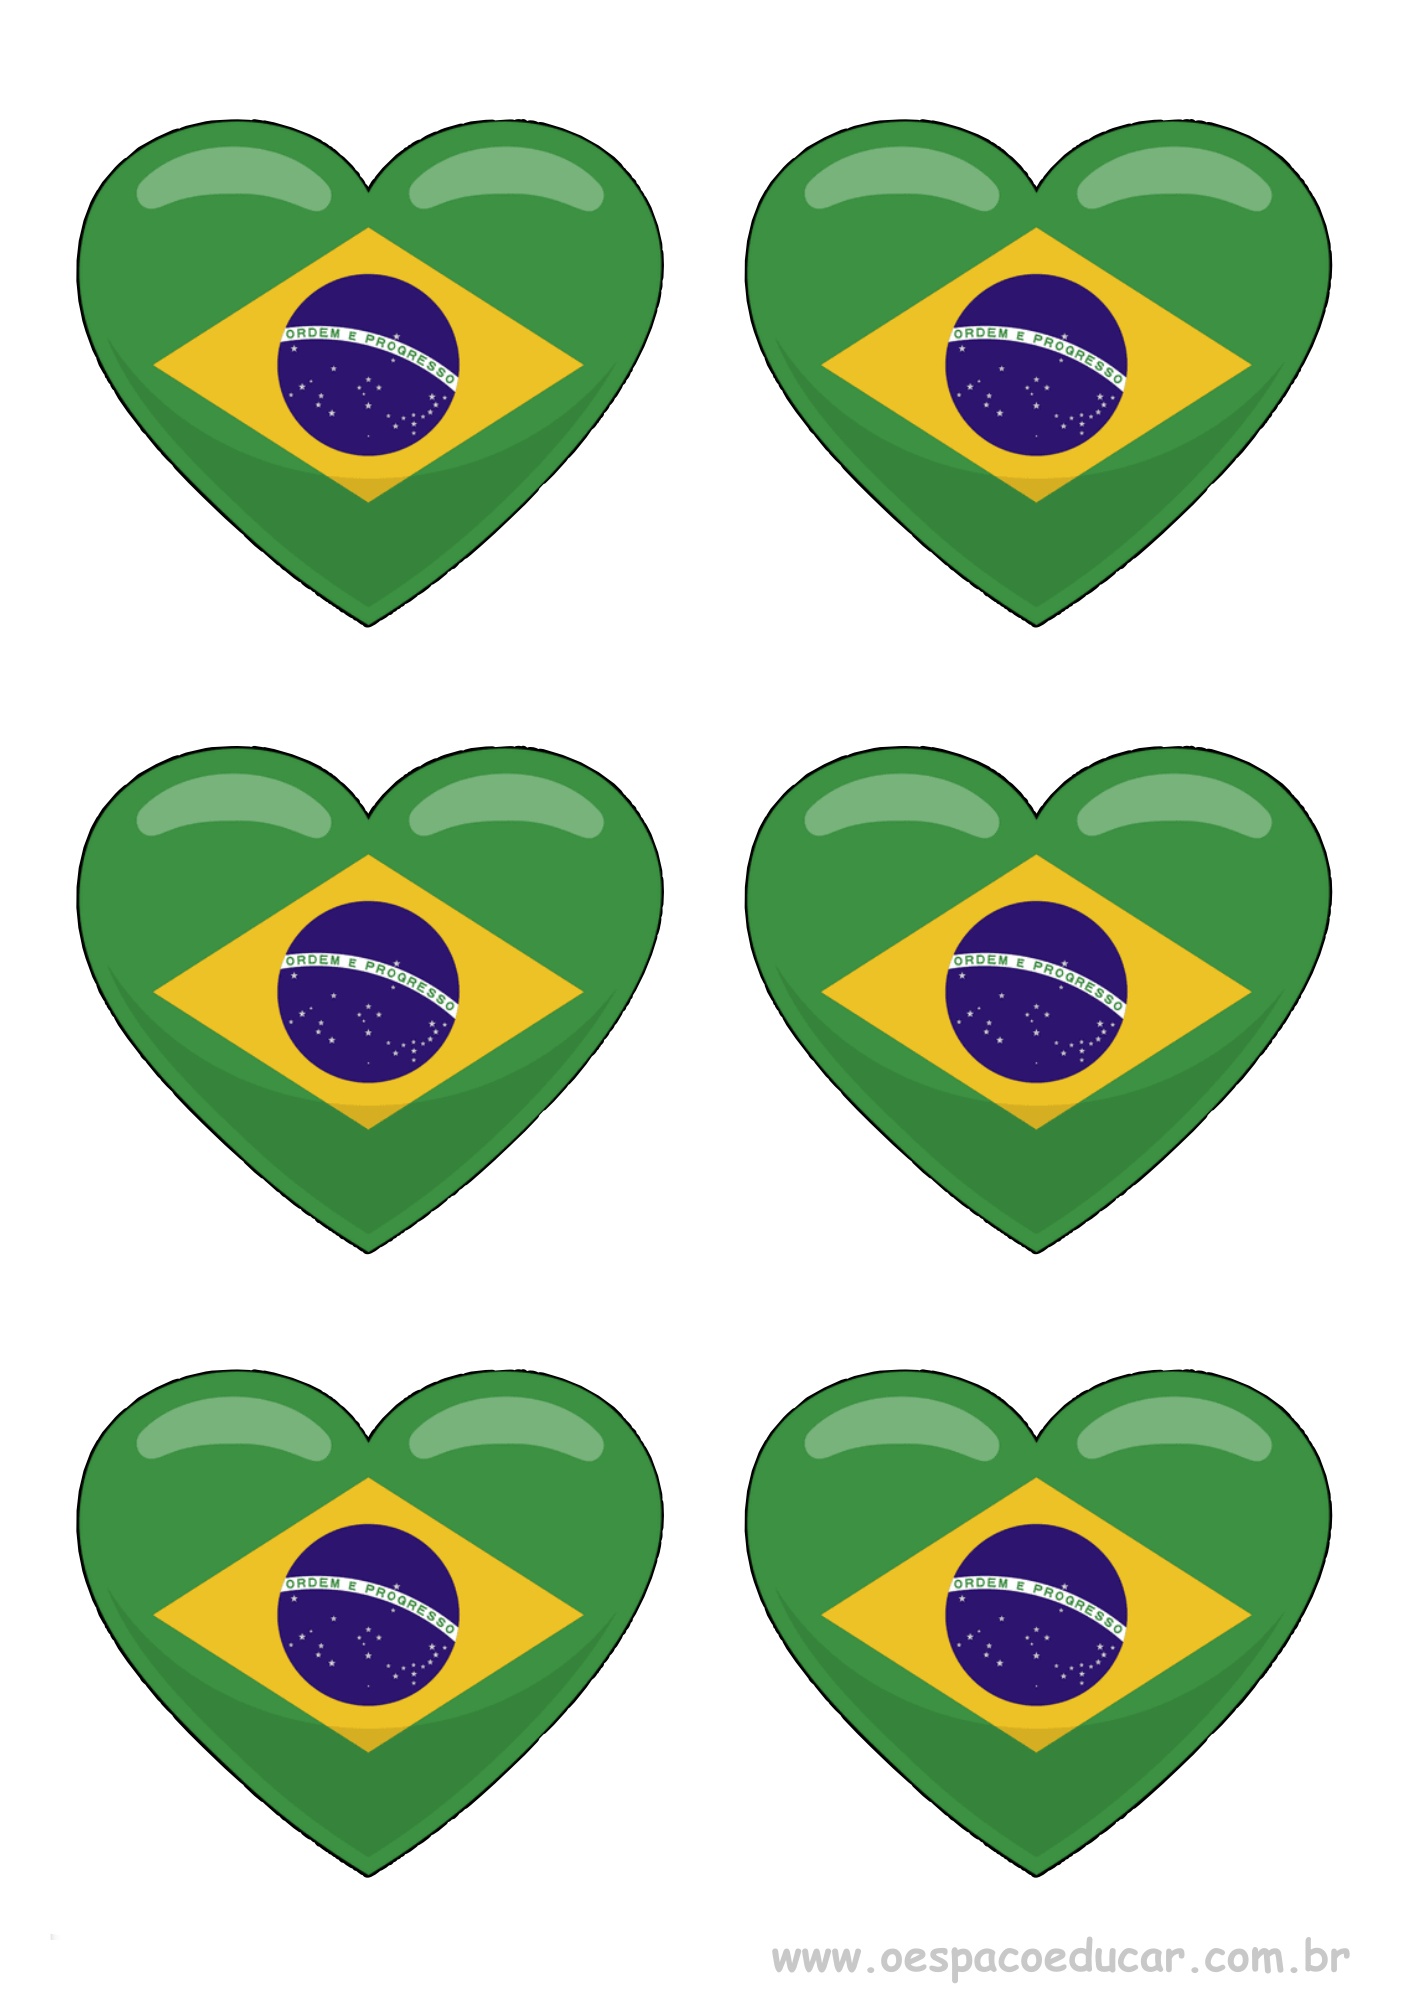 Braceletes, palitoches e bandeira do Brasil! - Blog Espaço Educar